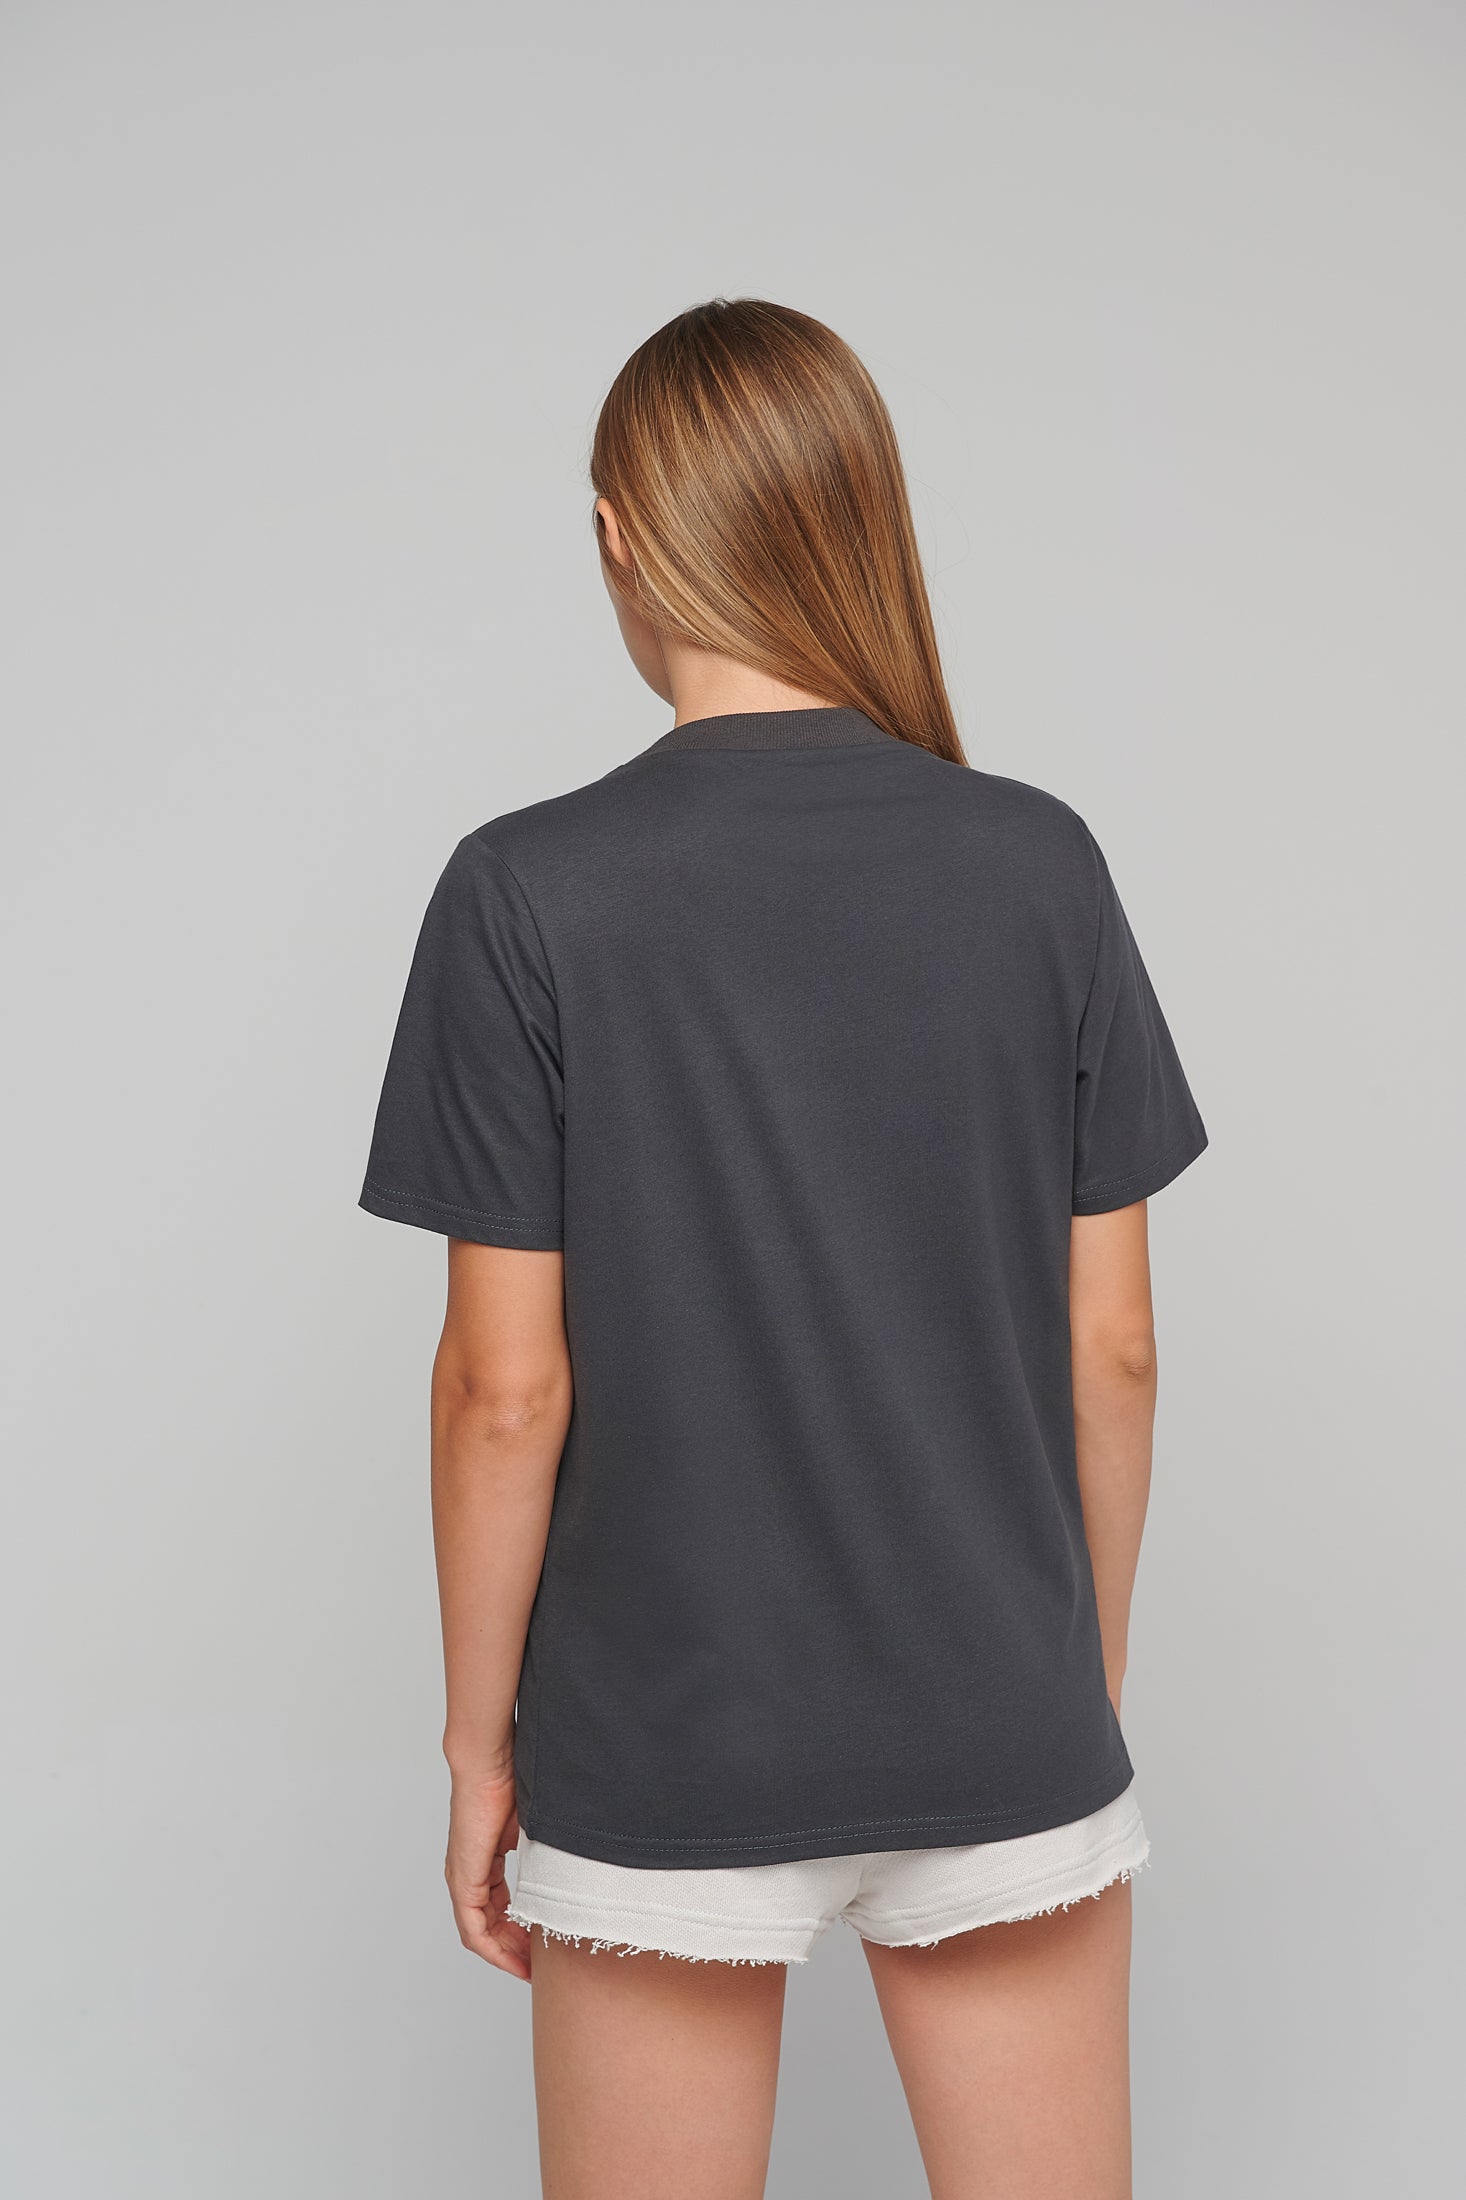 Theta SUN logo Unisex T-shirt / Black or Grey